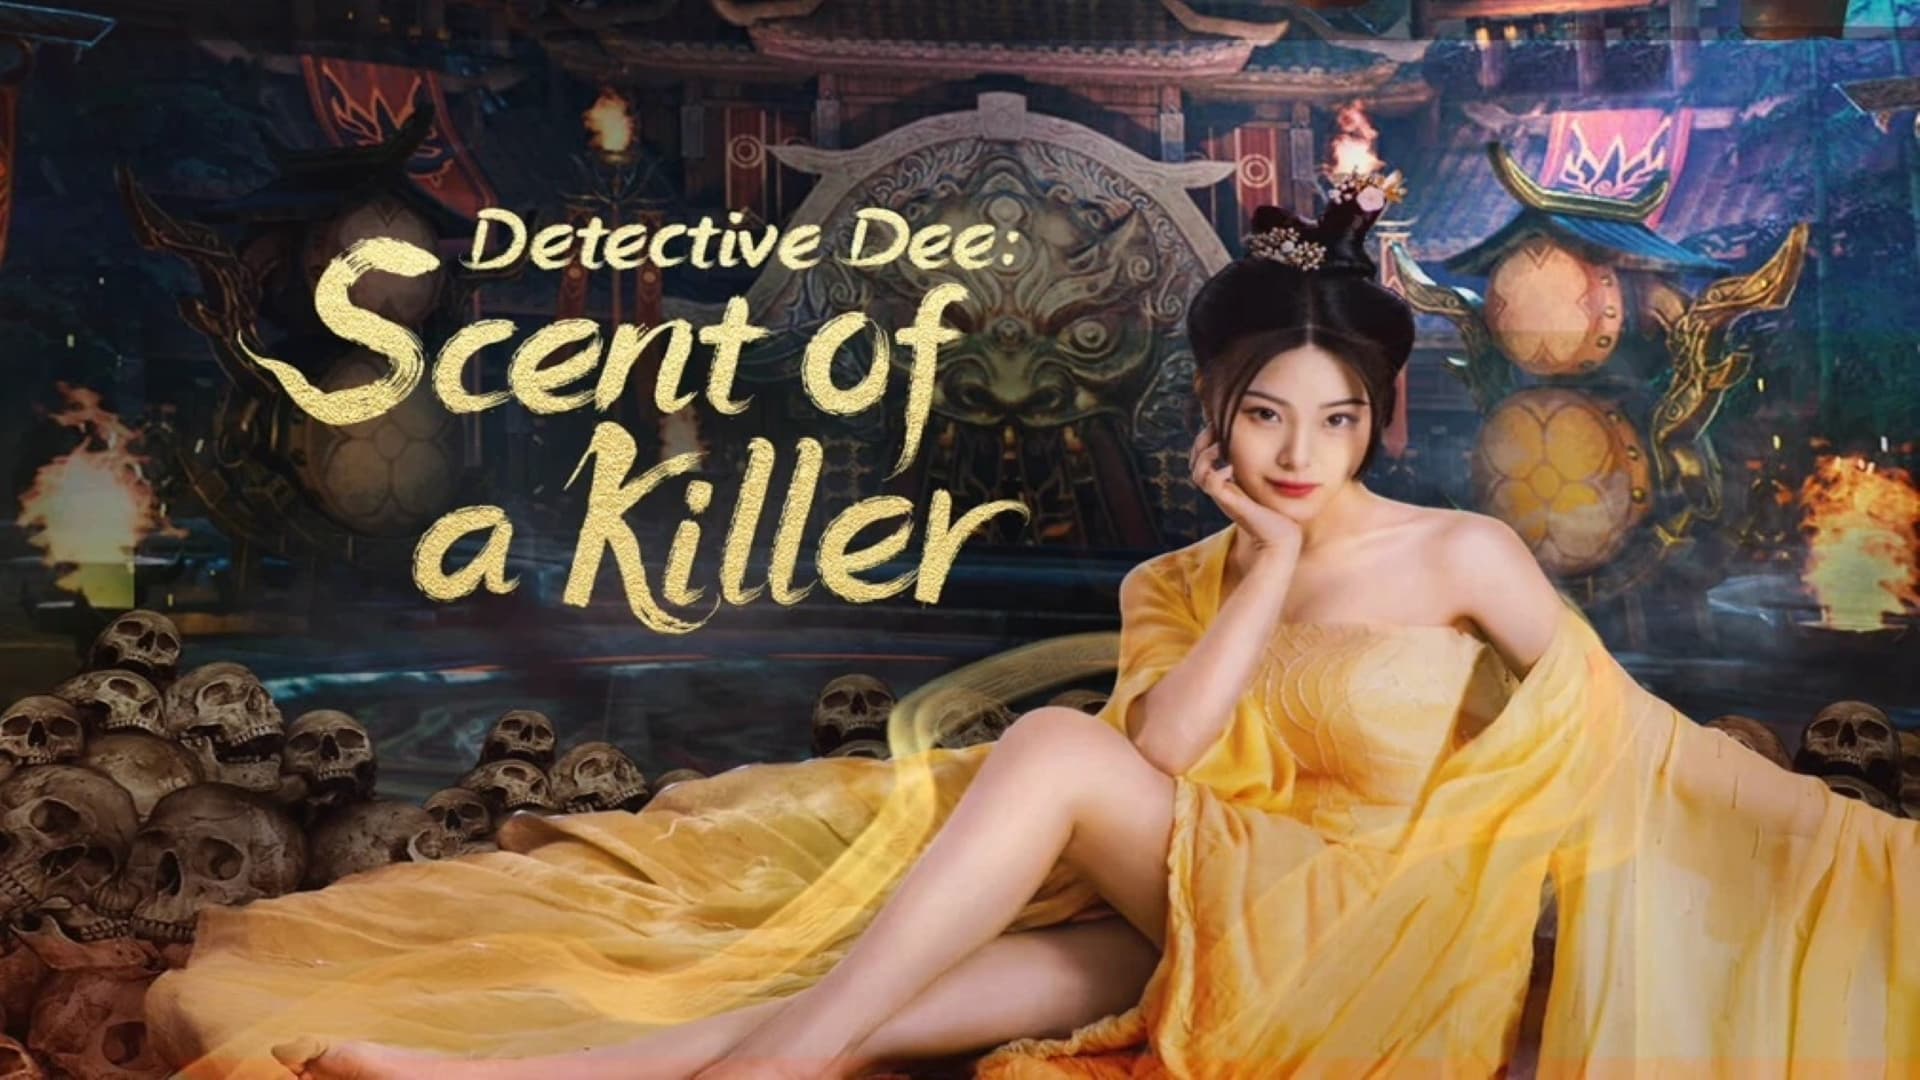 Định nhân kiệt: đoạt mệnh kì hương - Detective dee: scent of a killer